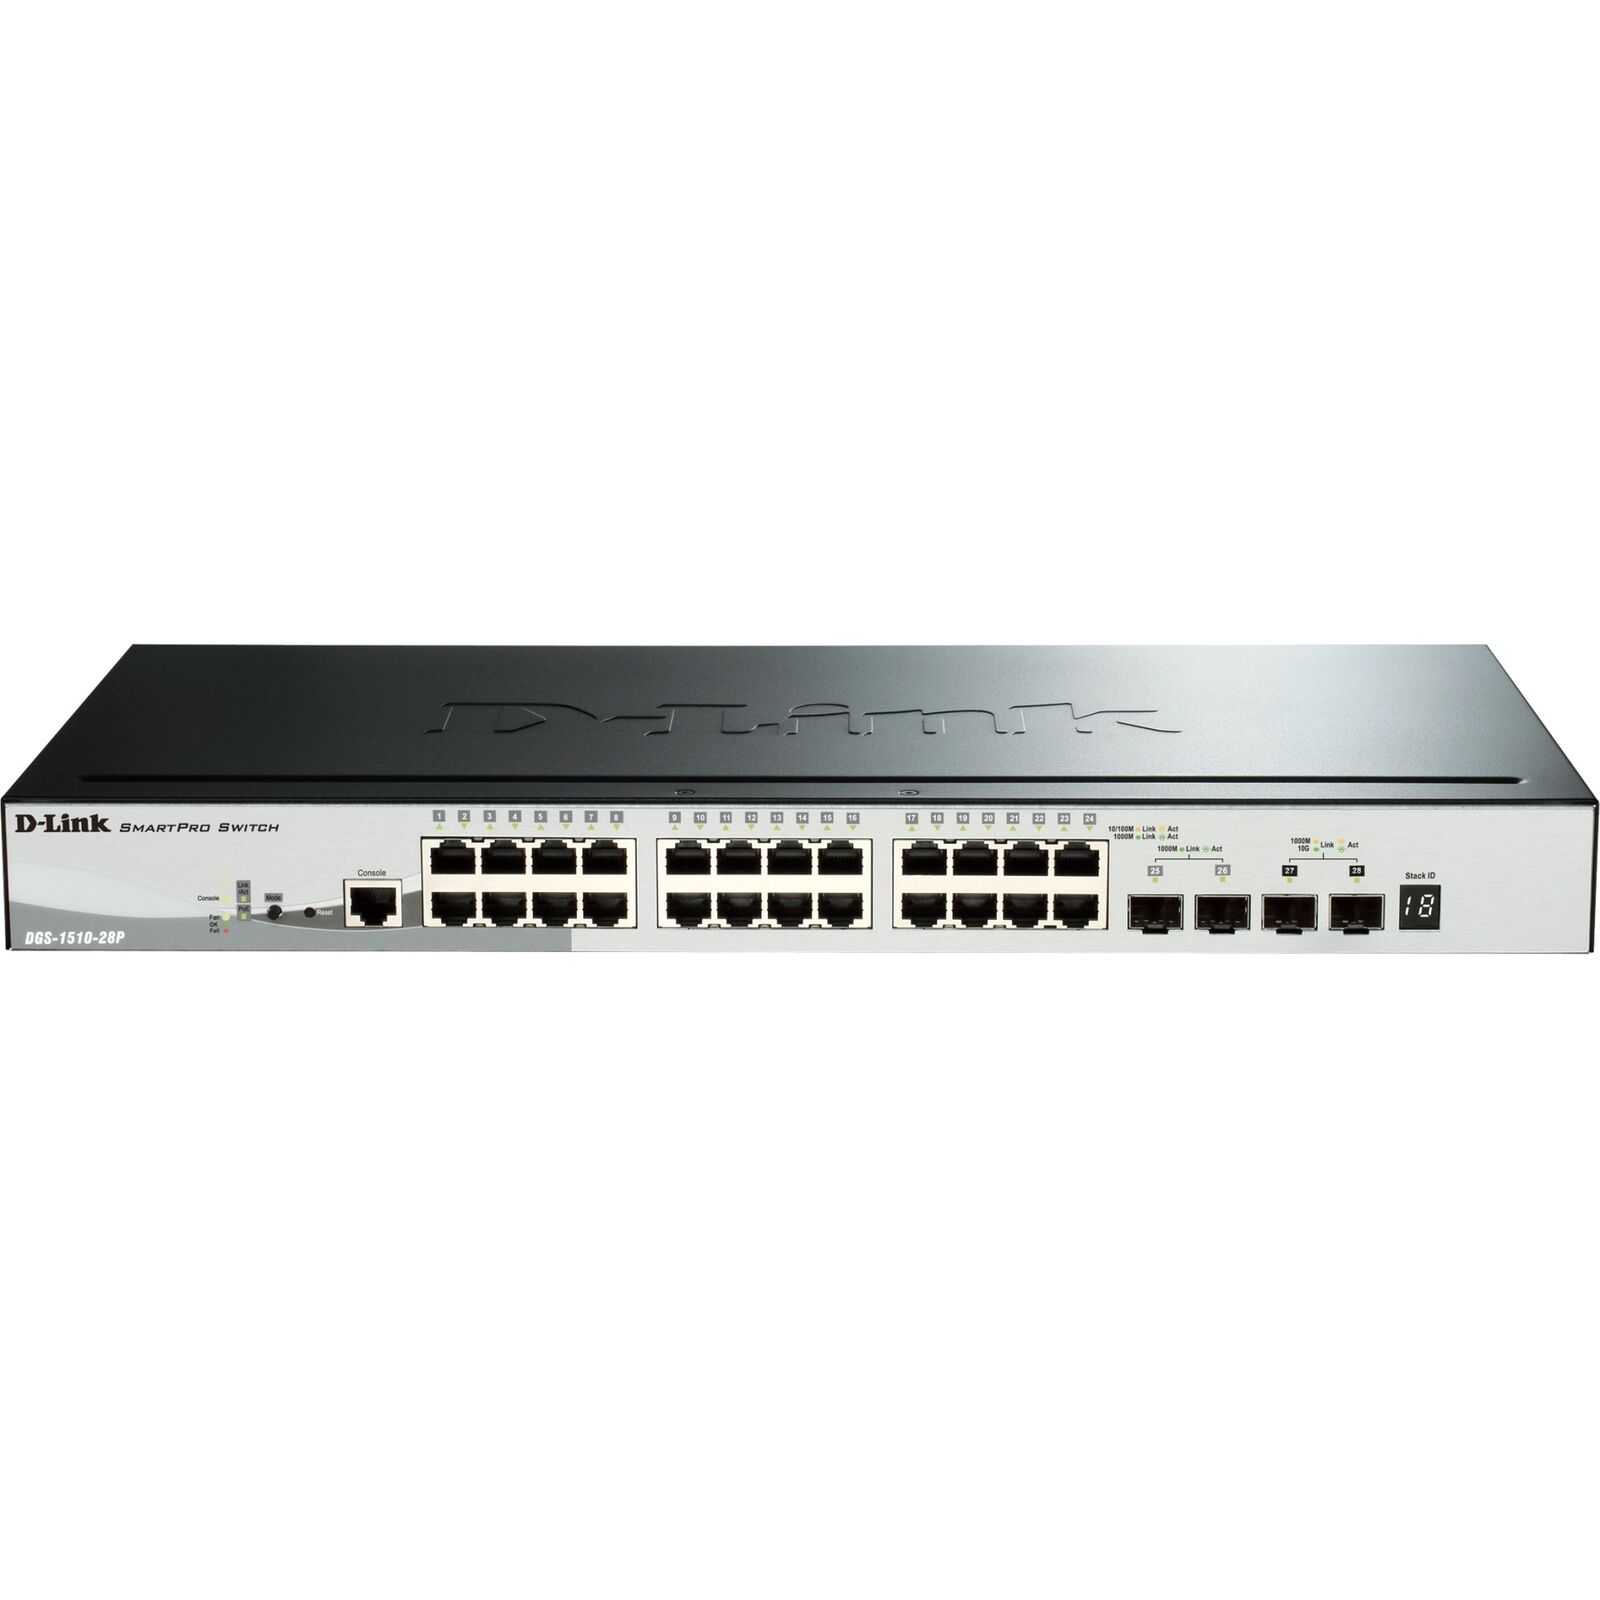 D-Link-New-DGS-1510-28P _ SmartPro Ethernet Switch - 28 Ports - Manage